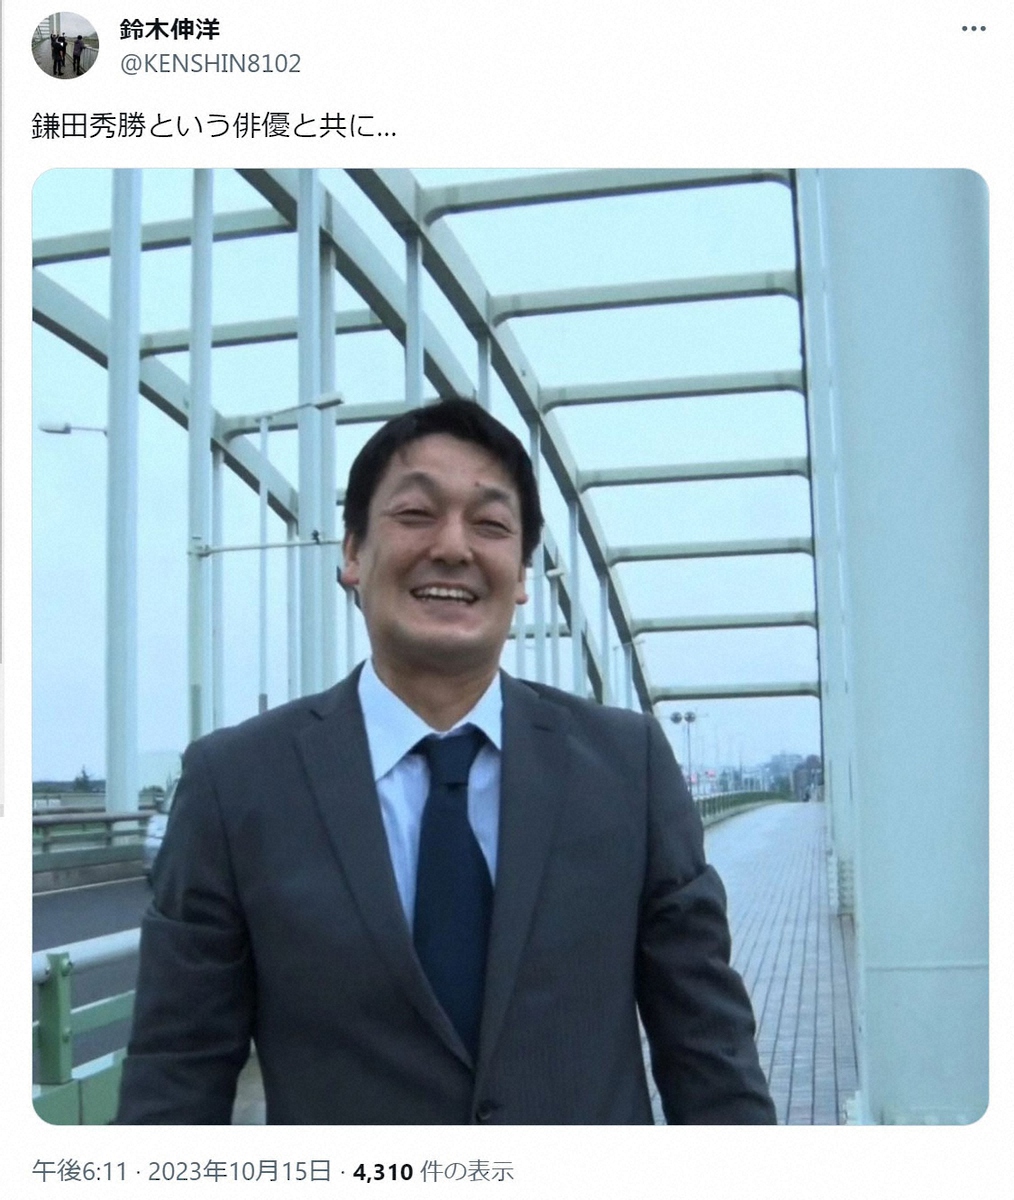 俳優・鎌田秀勝さん 9月末に肝臓の疾患で急逝 49歳 「西郷どん」「TOKYO VICE」など出演